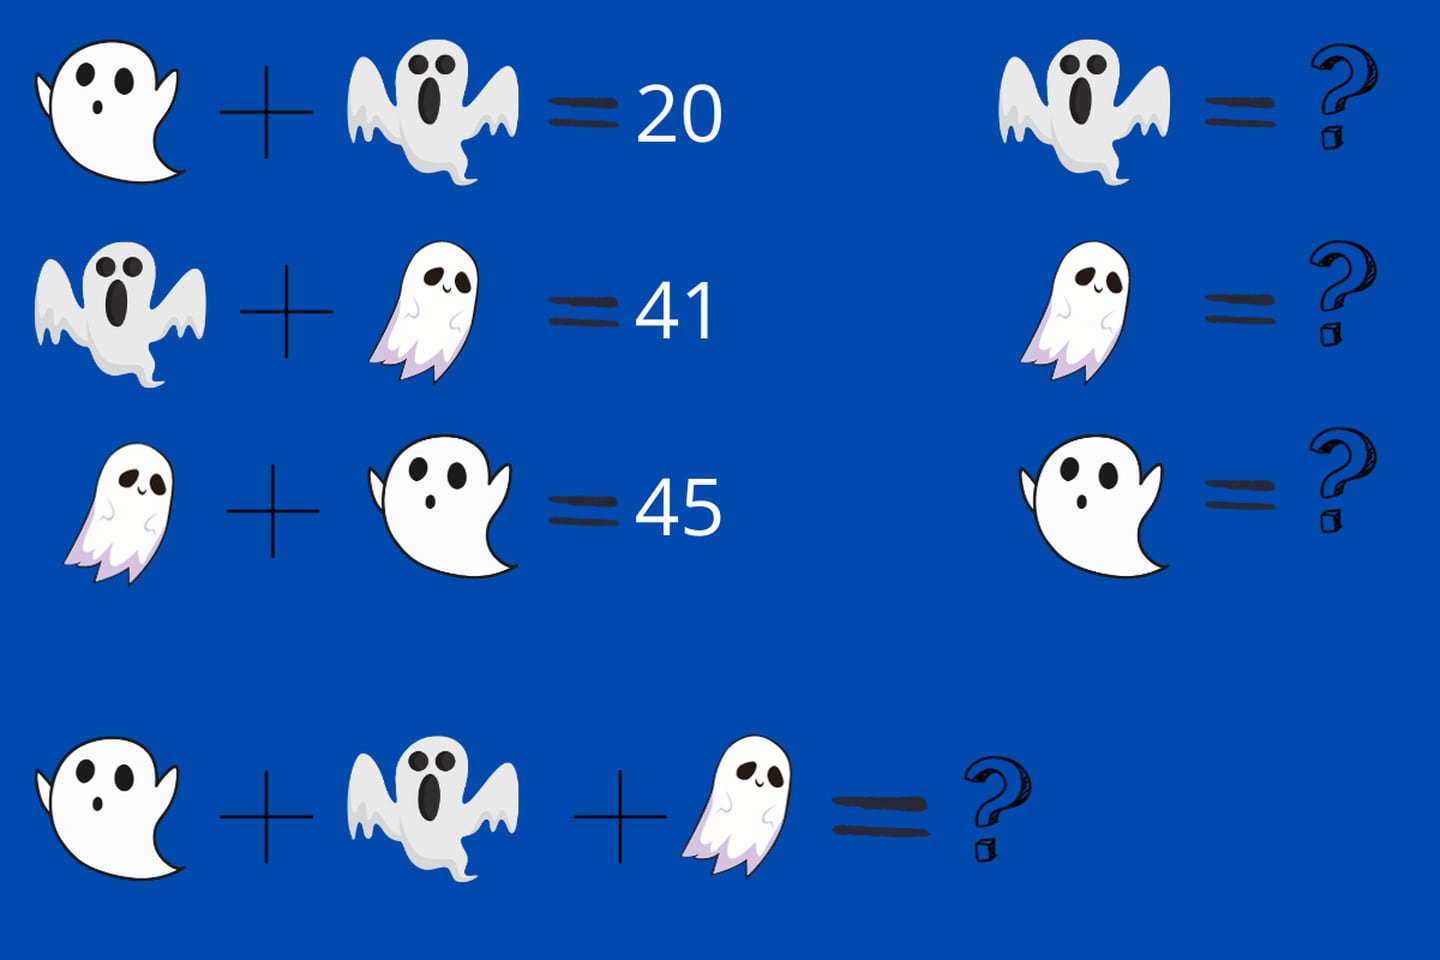 Fantasmas de diferentes tipos a los que se les asigna un número incógnito y sumados dan un número final que debes descubrir.